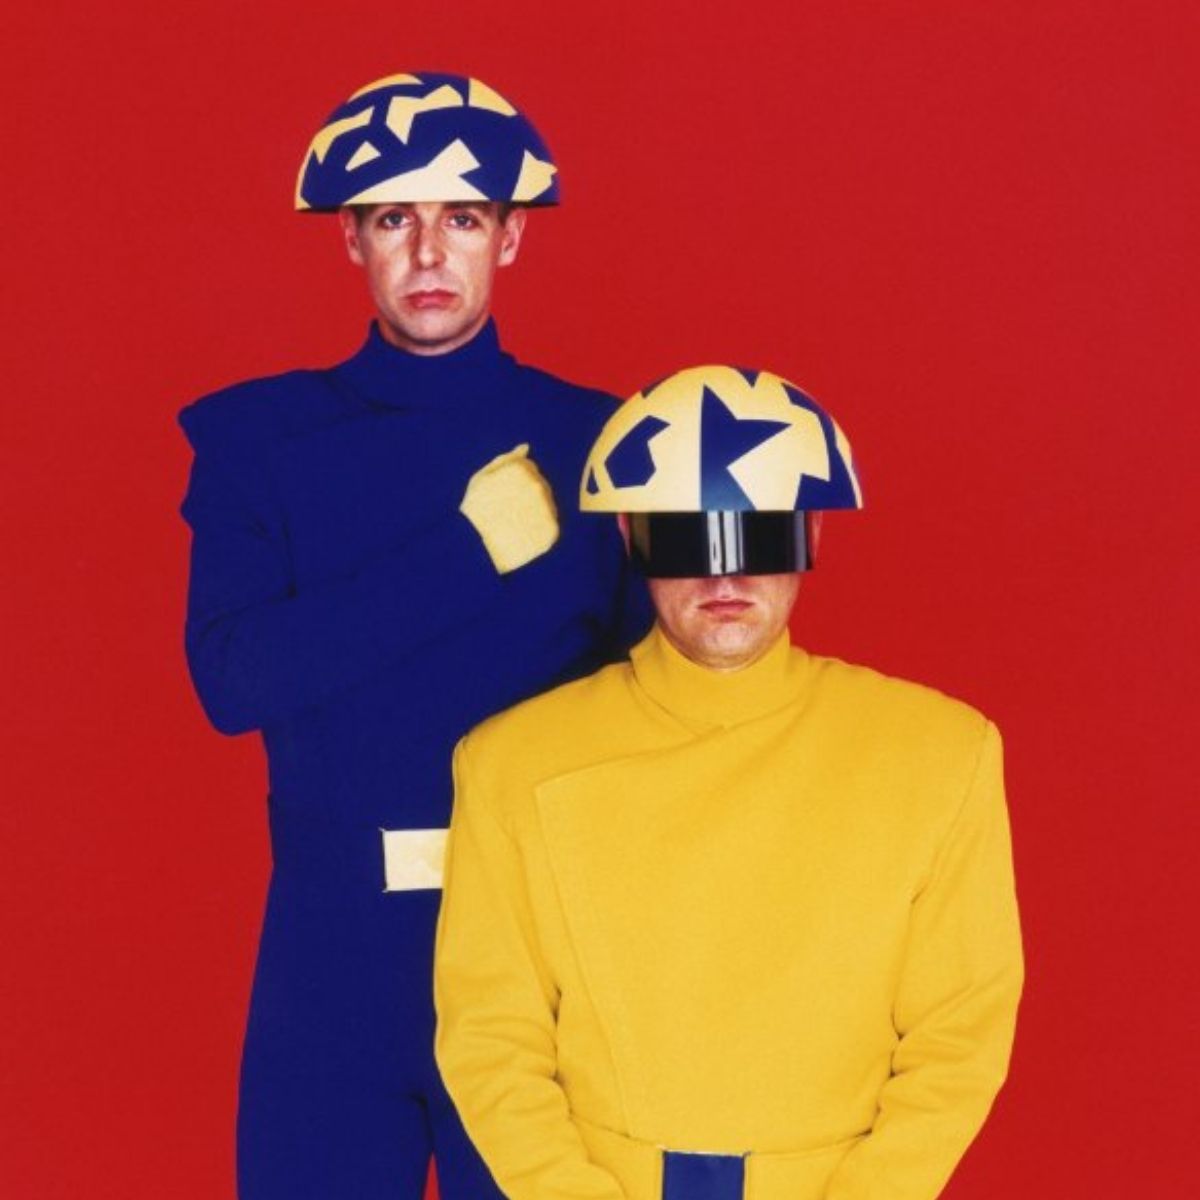 Titelbild der Pet Shop Boys-Single 'Go West' 